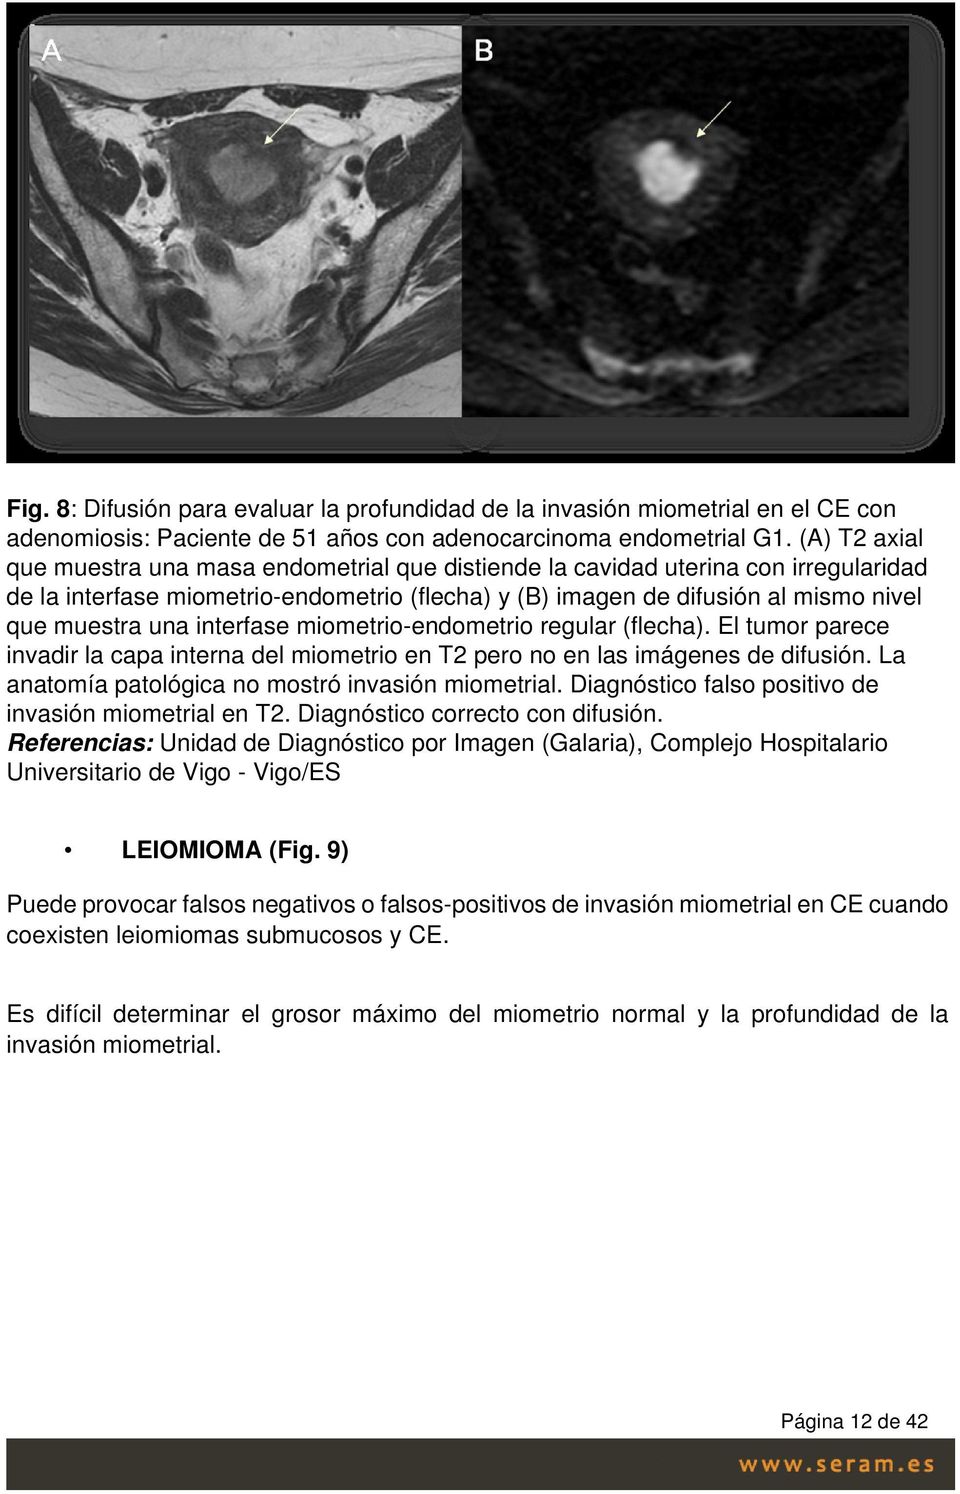 interfase miometrio-endometrio regular (flecha). El tumor parece invadir la capa interna del miometrio en T2 pero no en las imágenes de difusión. La anatomía patológica no mostró invasión miometrial.